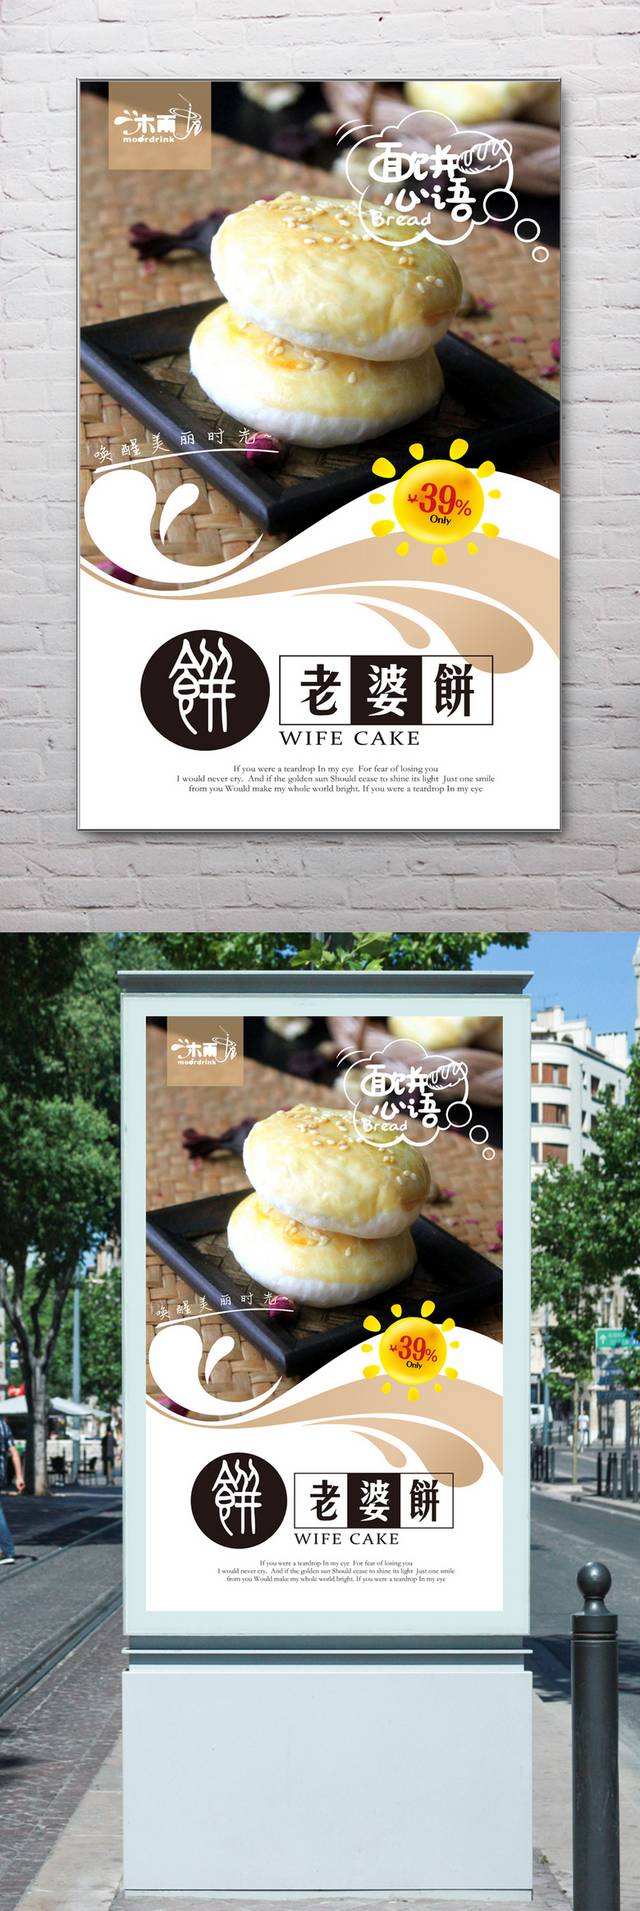 老婆饼宣传海报设计高清psd